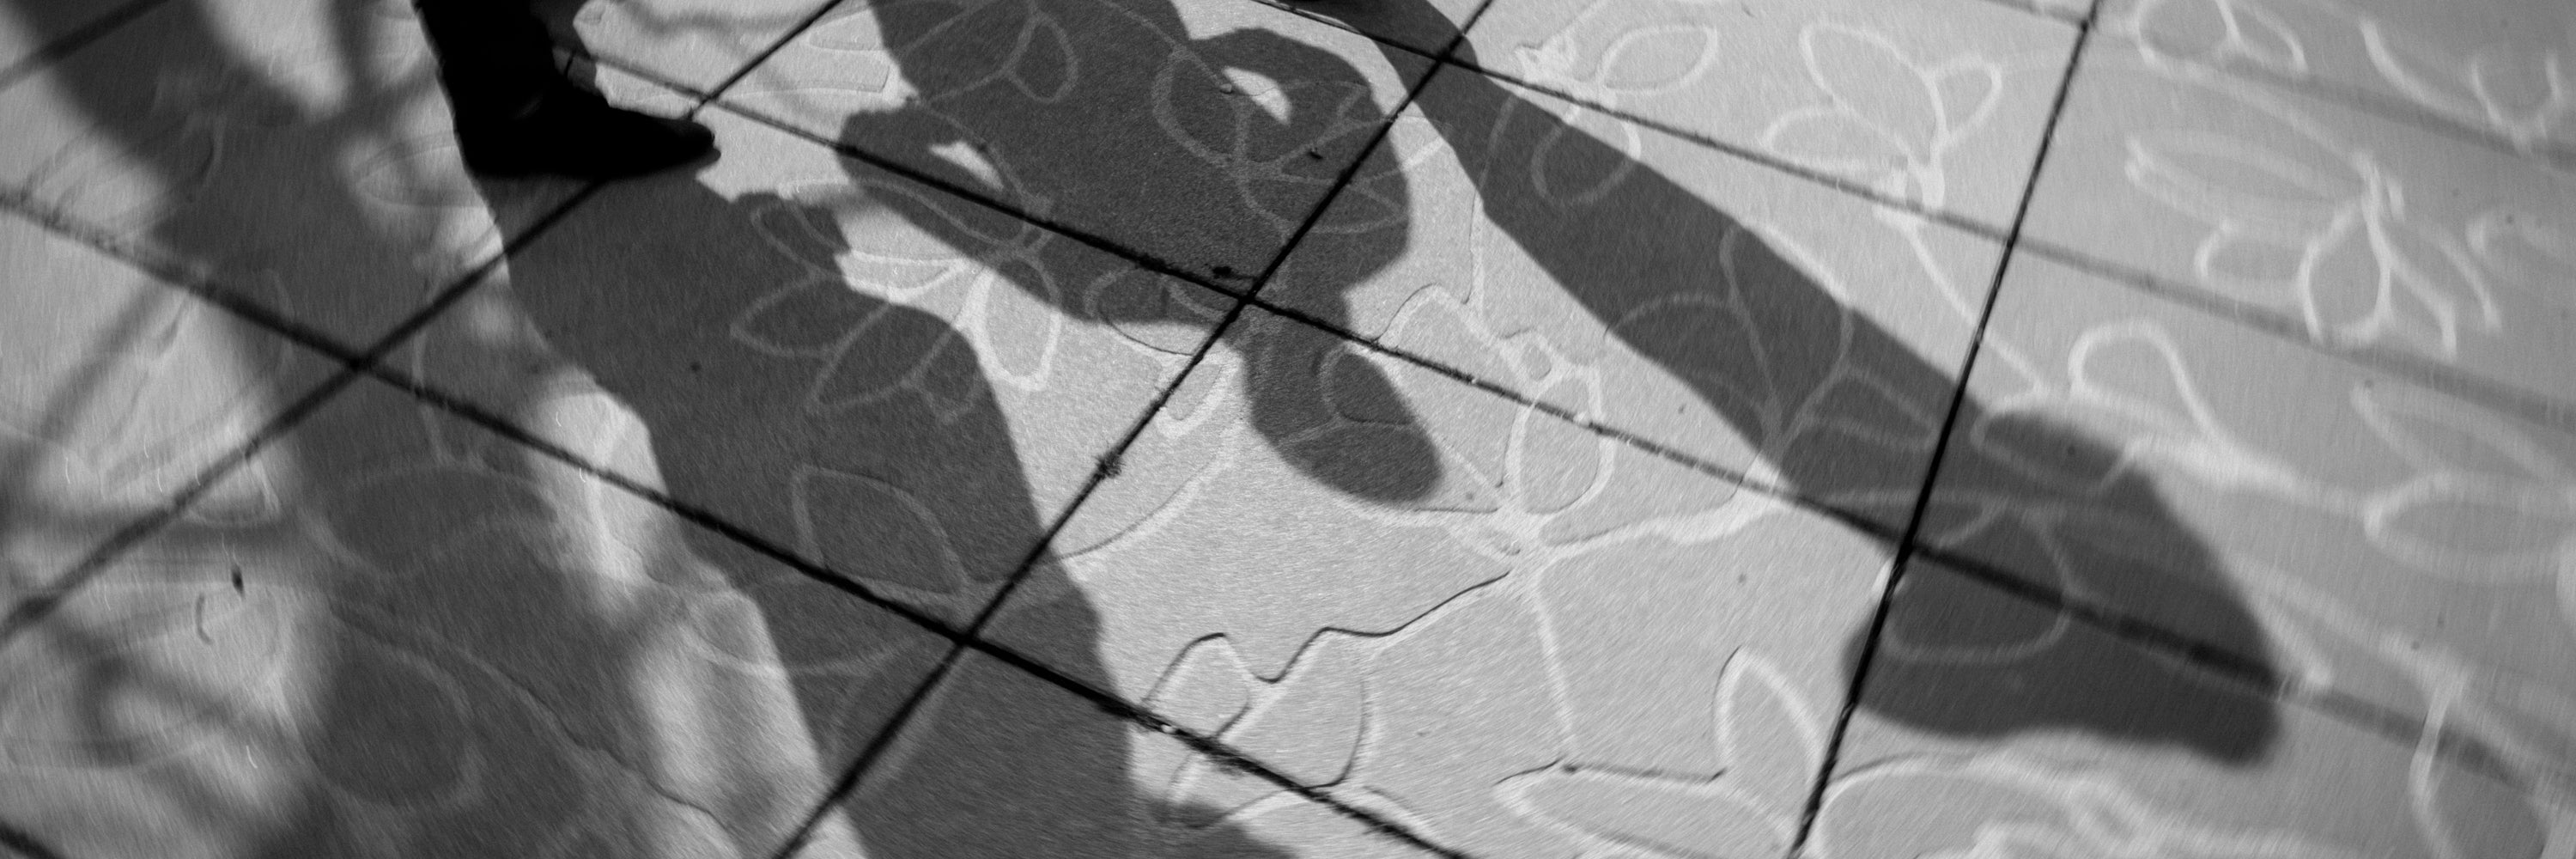 3 shadows on courtyard floor